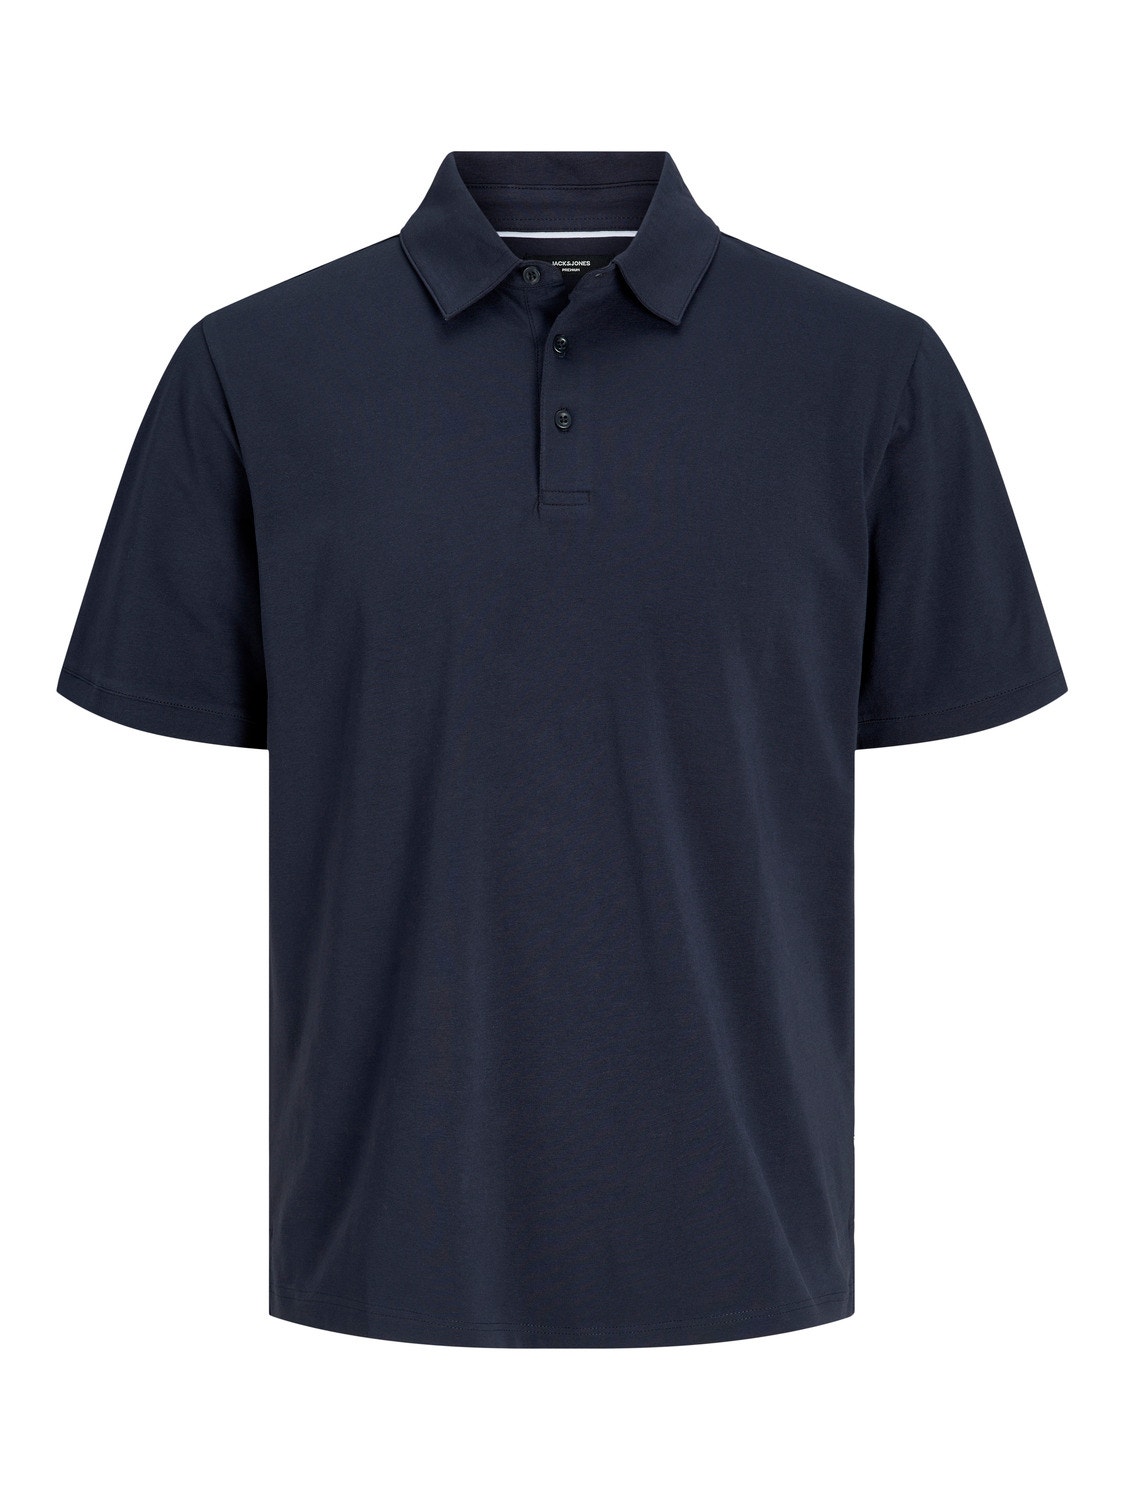 Jack & Jones Plain Polo T-shirt -Night Sky - 12251349